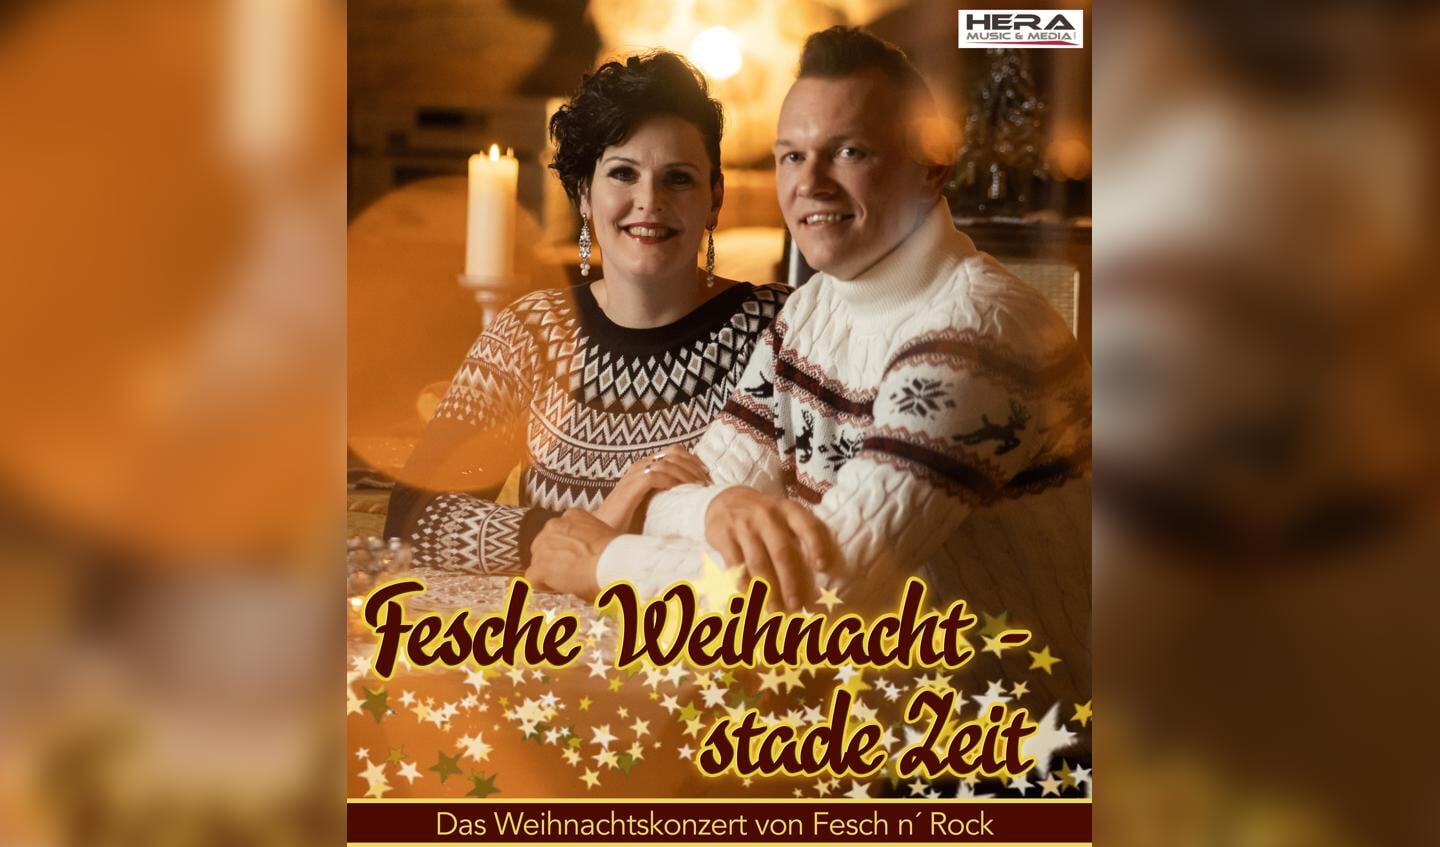 Met hun kerstconcert ‘Fesche Weihnacht, Stade Zeit’ laten Rita en Andreas weer een hele andere, maar ook weer een hele mooie kant van hun veelzijdigheid zien en horen. Foto: PR